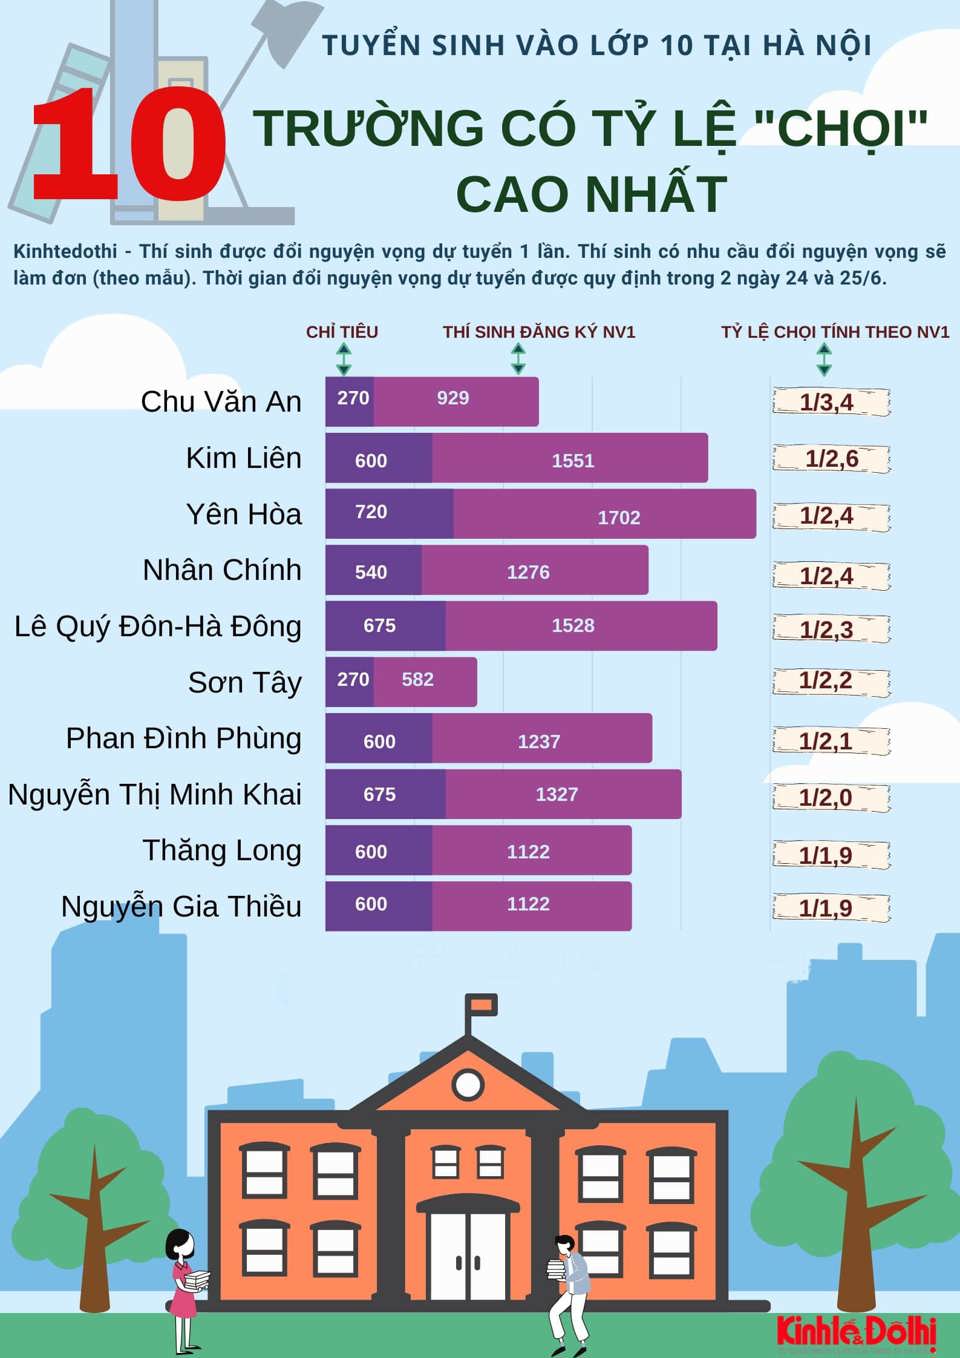 [Infographic] Hà Nội: 10 trường có tỷ lệ "chọi" cao nhất vào lớp 10 năm học 2020-2021 - Ảnh 1